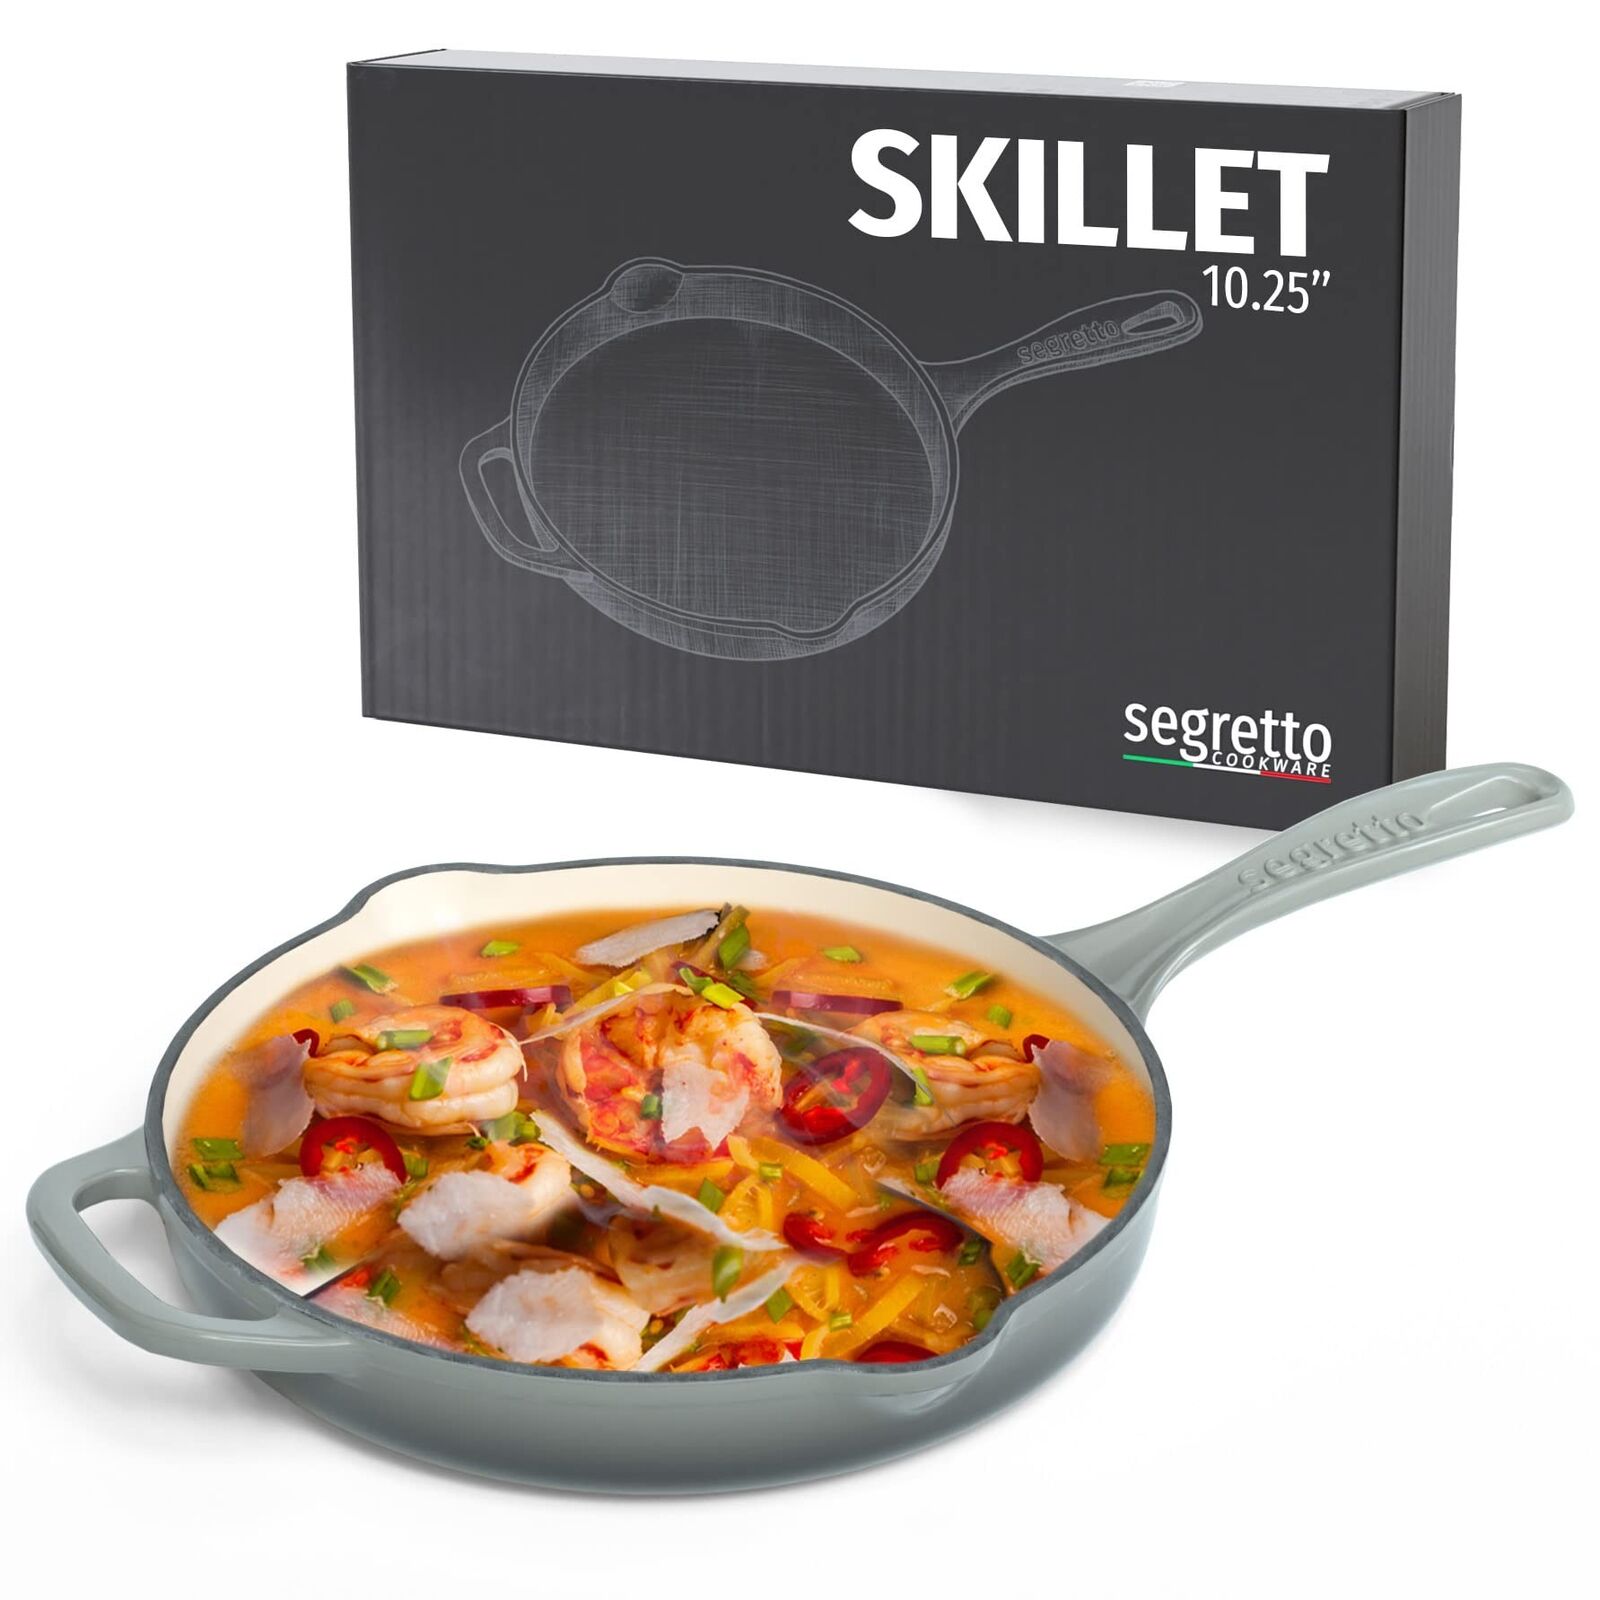 Segretto Cookware Pre-Seasoned Cast Iron Skillet, 10.25-IN Grigio Scuro (Grad...